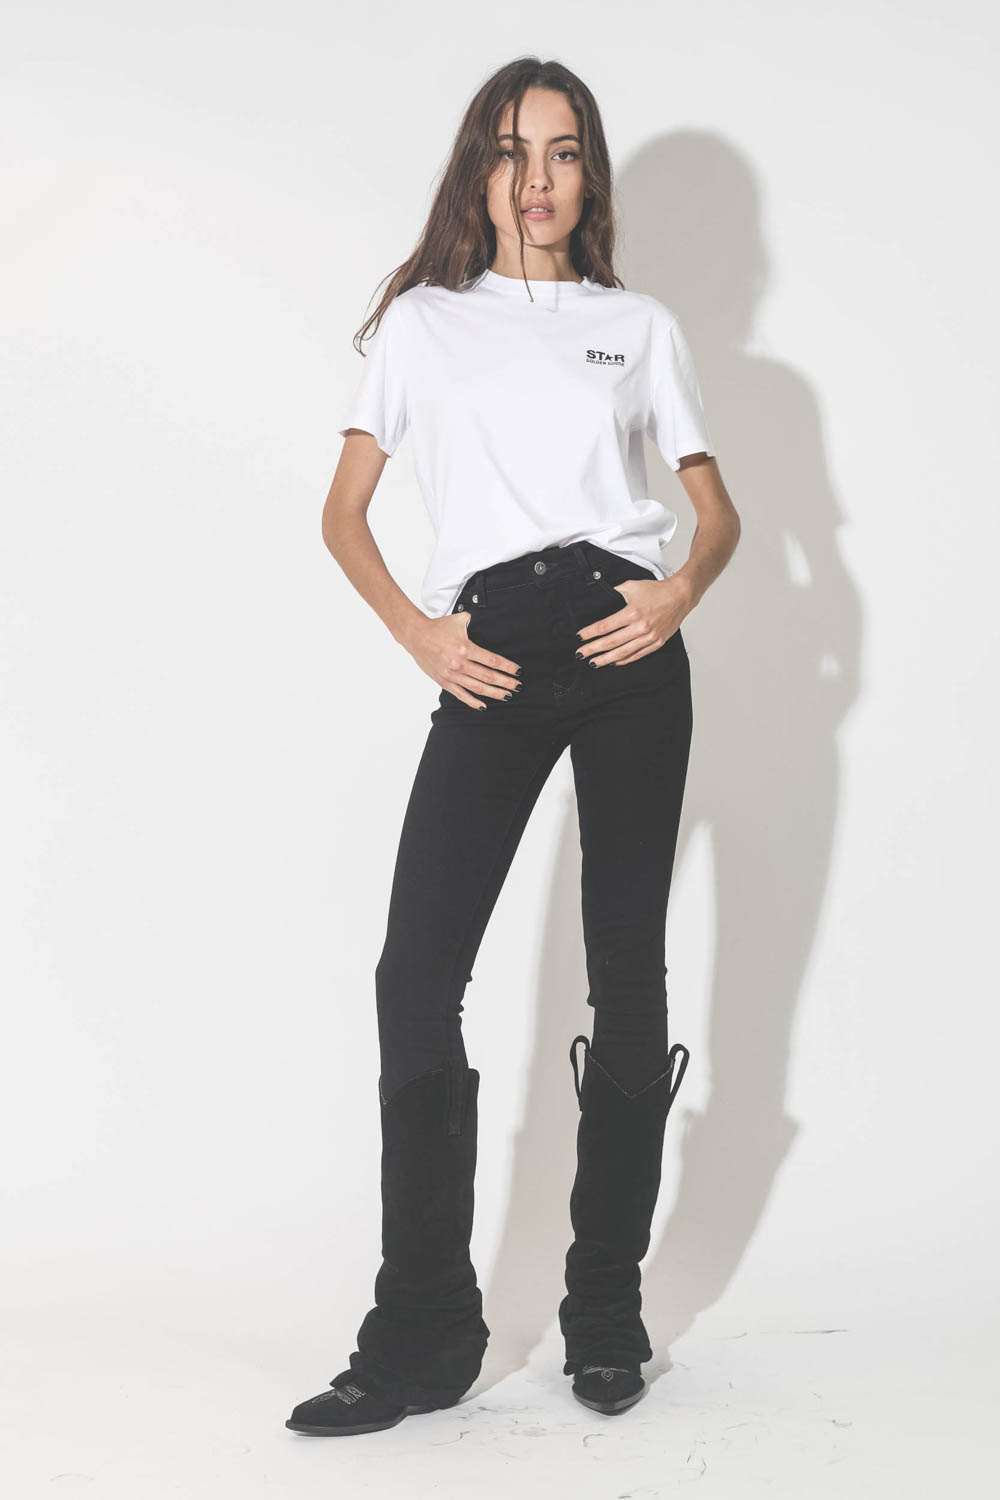 Jeans skinny taille haute en toile noir Deena Golden Goose. Porté avec des bottes santiags noires.